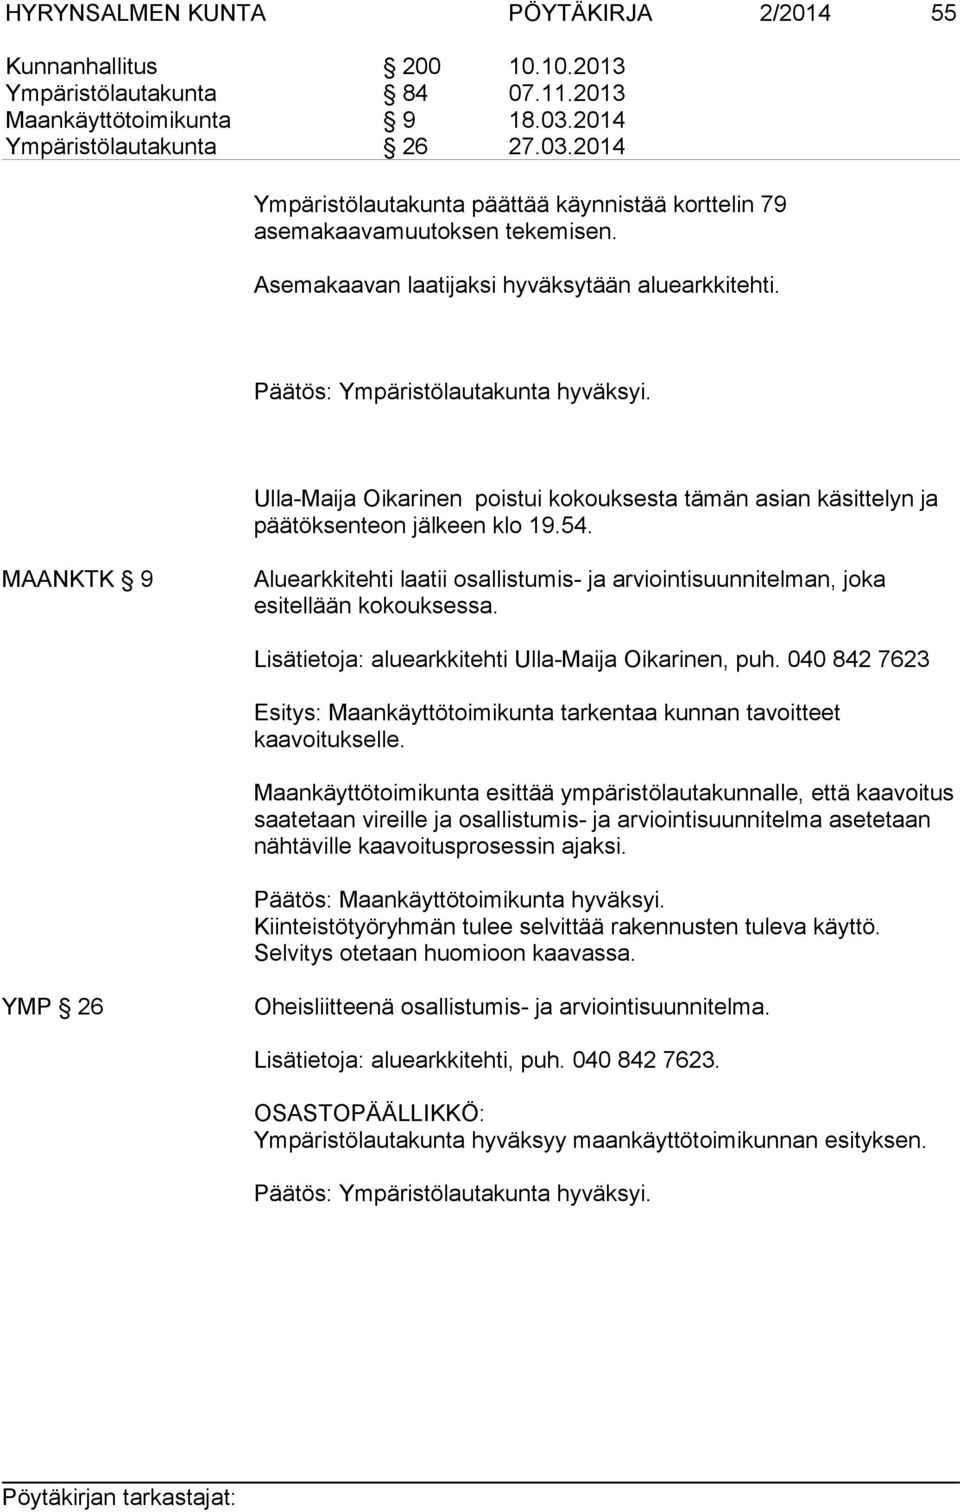 Ulla-Maija Oikarinen poistui kokouksesta tämän asian käsittelyn ja päätöksenteon jälkeen klo 19.54. MAANKTK 9 Aluearkkitehti laatii osallistumis- ja arviointisuunnitelman, joka esitellään kokouksessa.